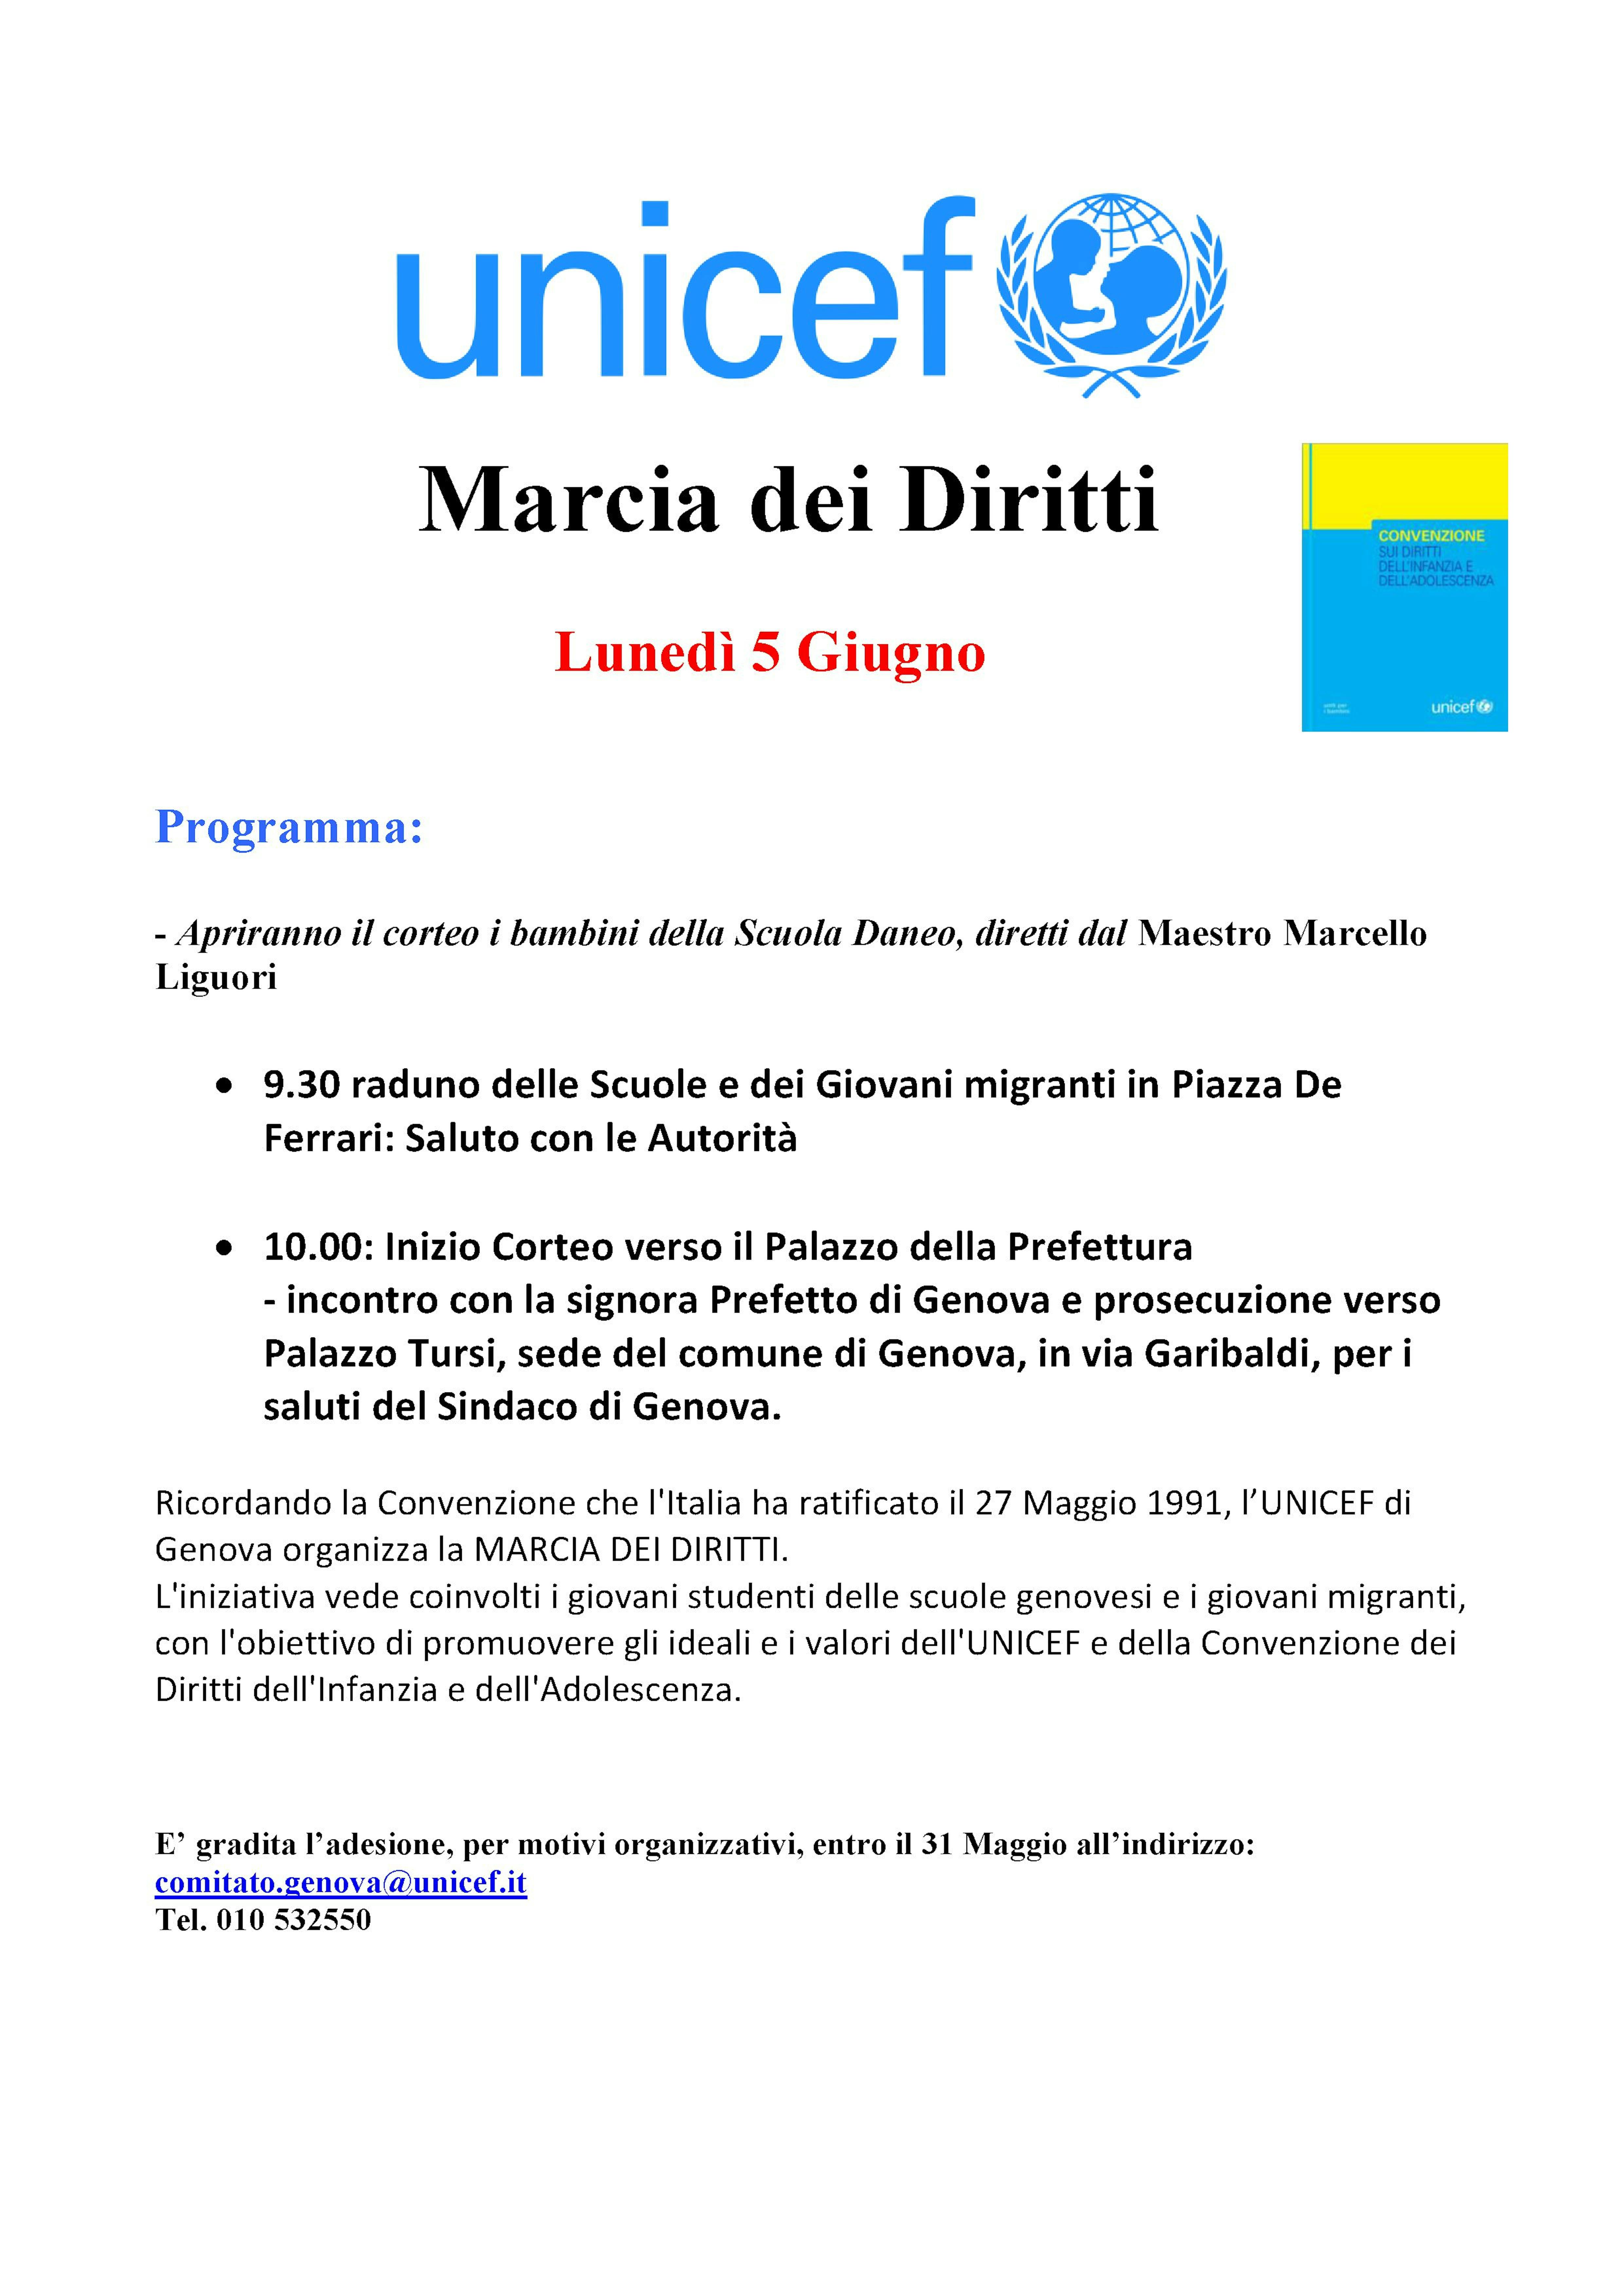 A Genova, il 5 giugno, vi aspettiamo alla Marcia dei Diritti